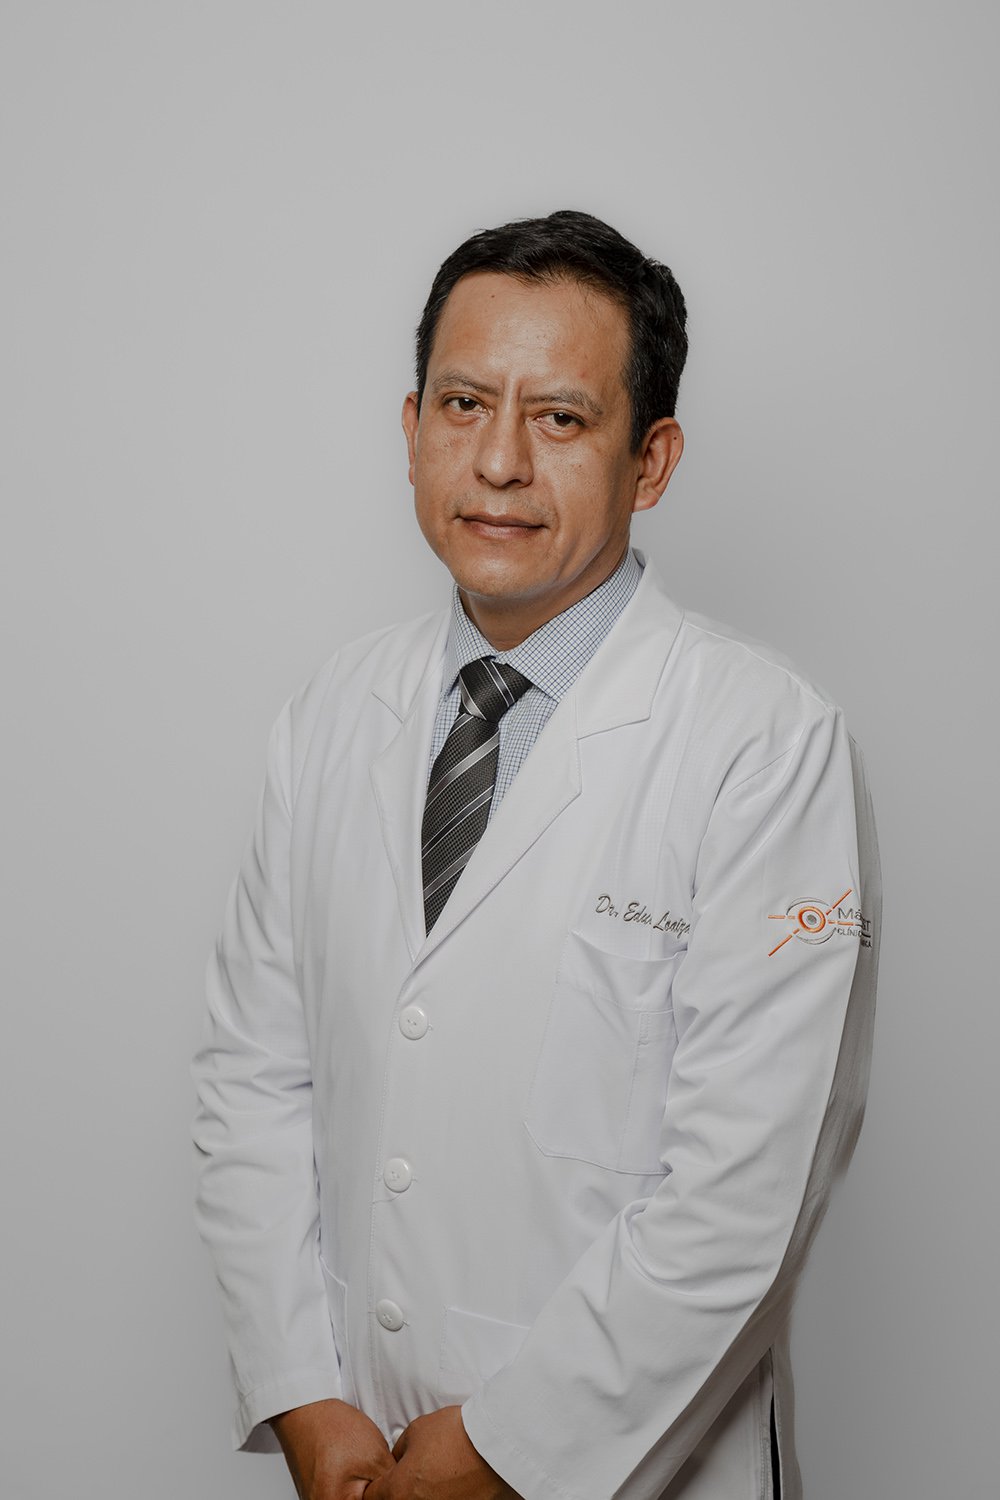 DR. EDUARDO LOAIZA